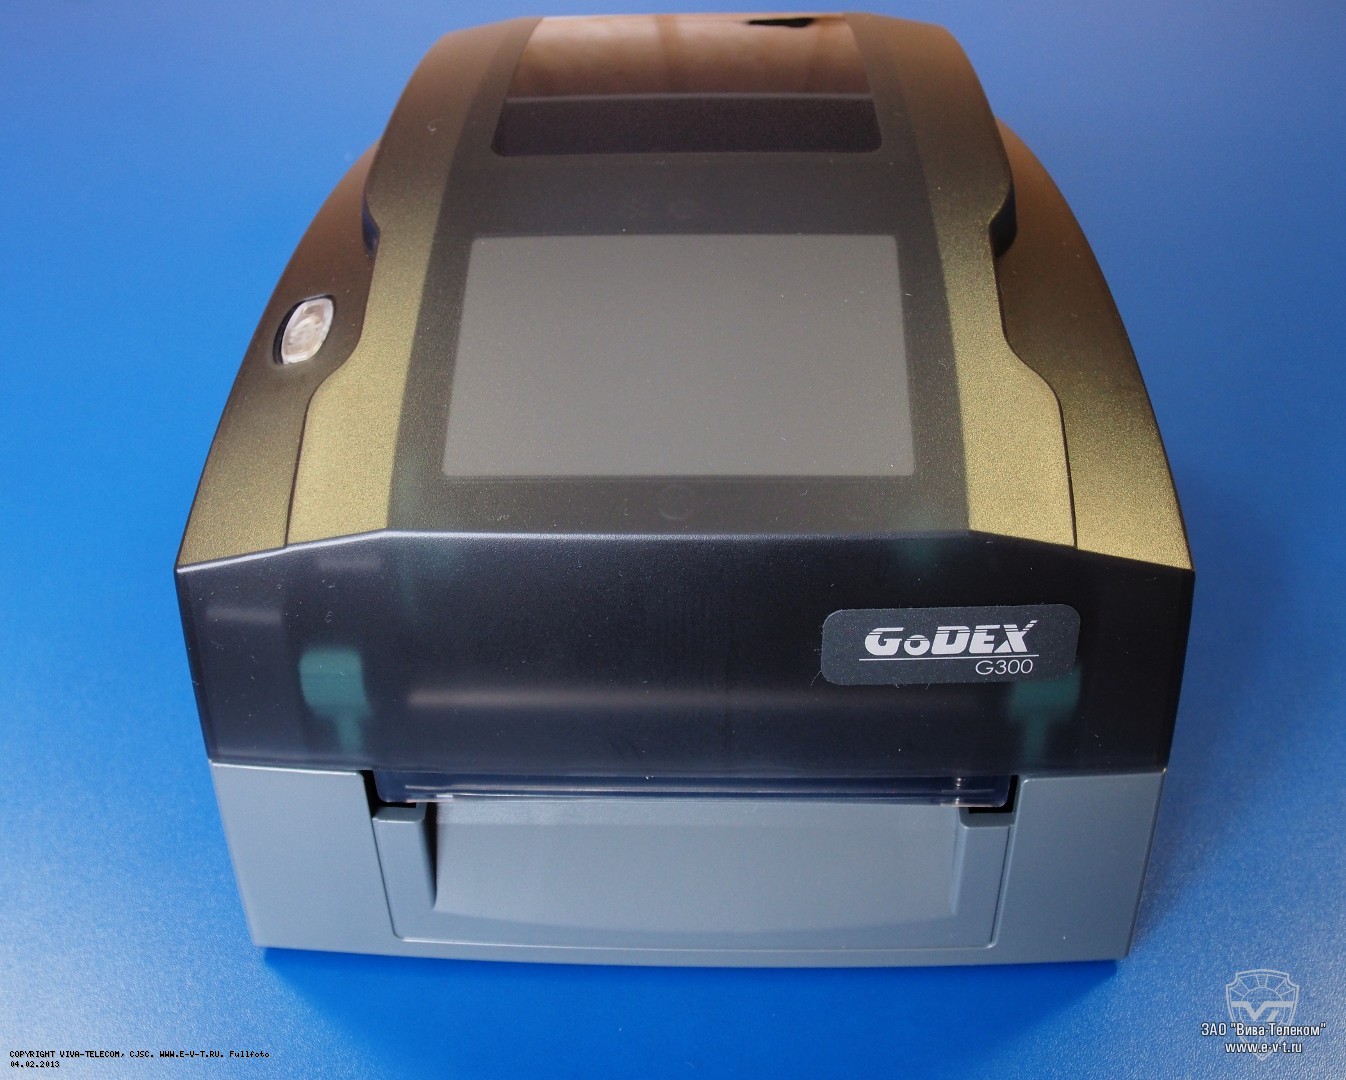    Godex G300 